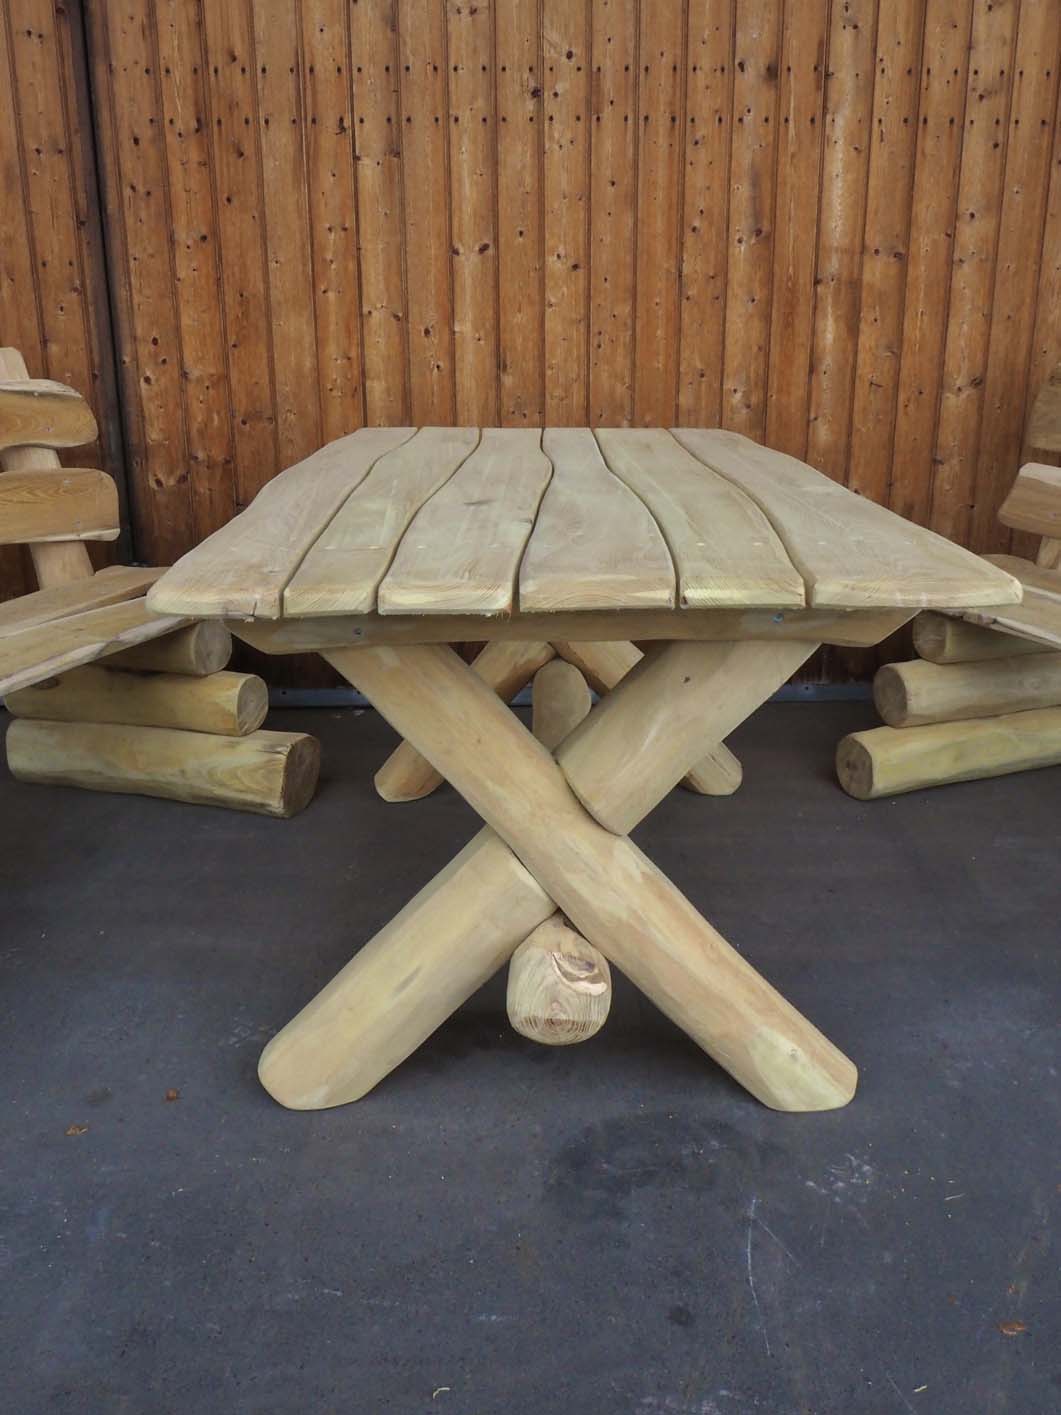 heller Robinien Holz Tisch in Apolda kaufen bei Holz Beck